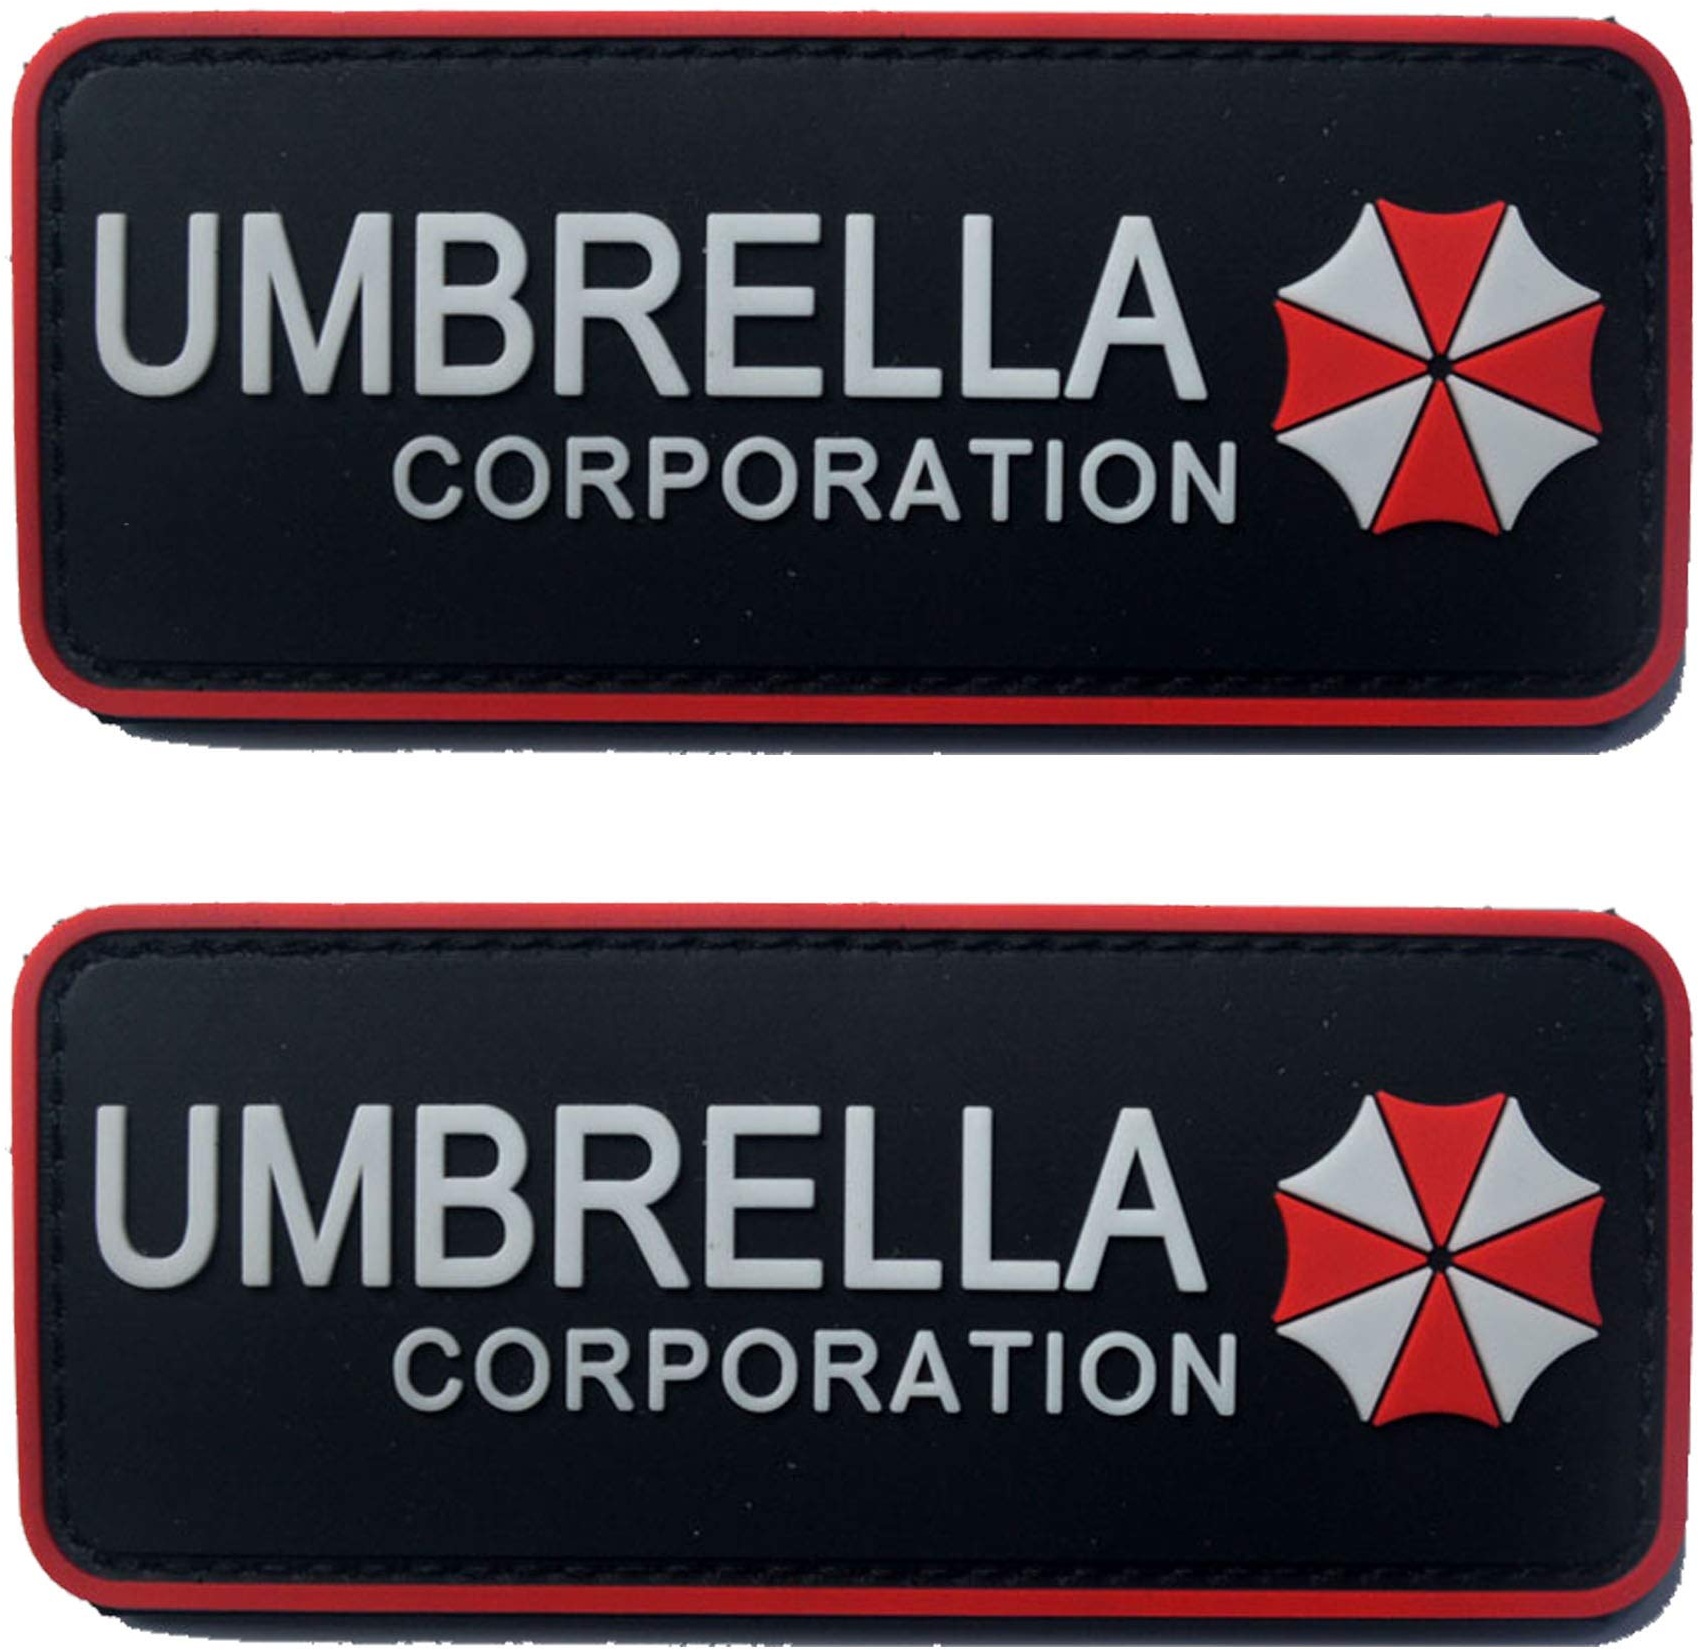 Resident Evil Umbrella Corporation PVC Patch Abzeichen Emblem Applikation Haken Patch für Kleidung Rucksack Zubehör Manschette 2 Stück